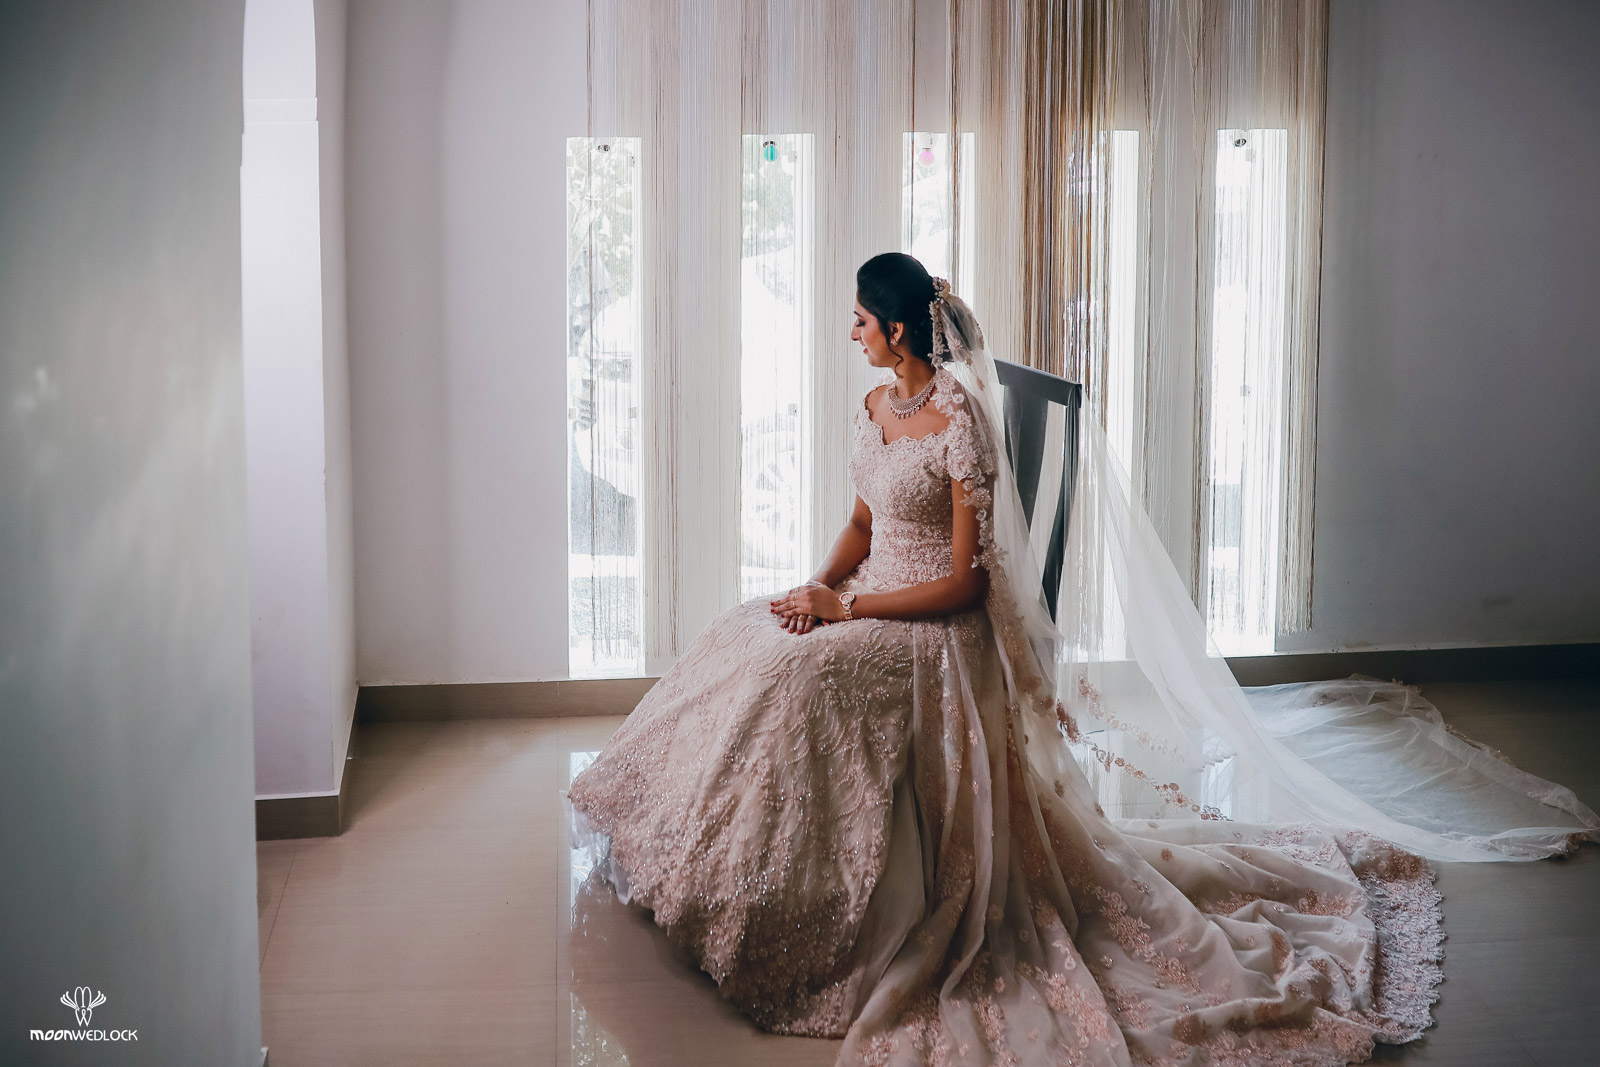 christian-wedding-photographers-bangalore-moonwedlock (8)